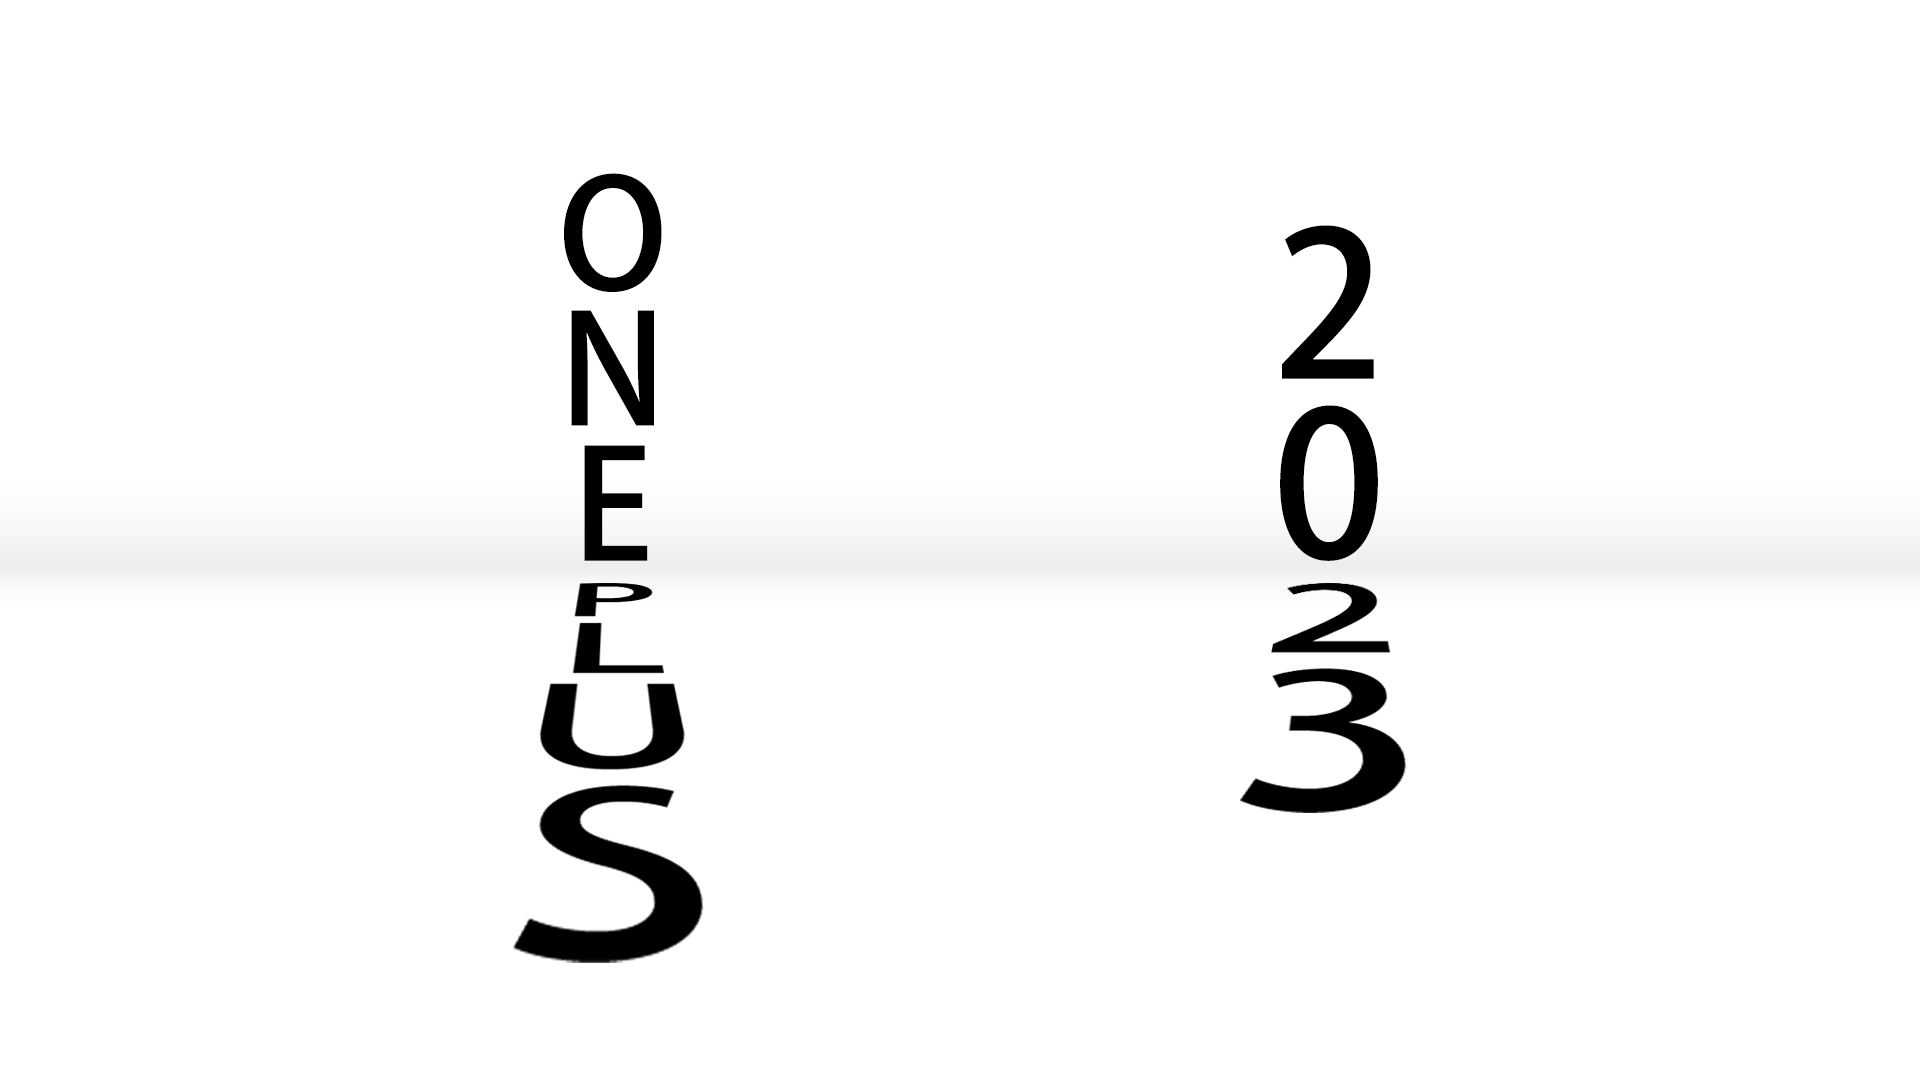 Źródło: OnePlus planuje wprowadzić kilka składanych smartfonów w 2023 r.